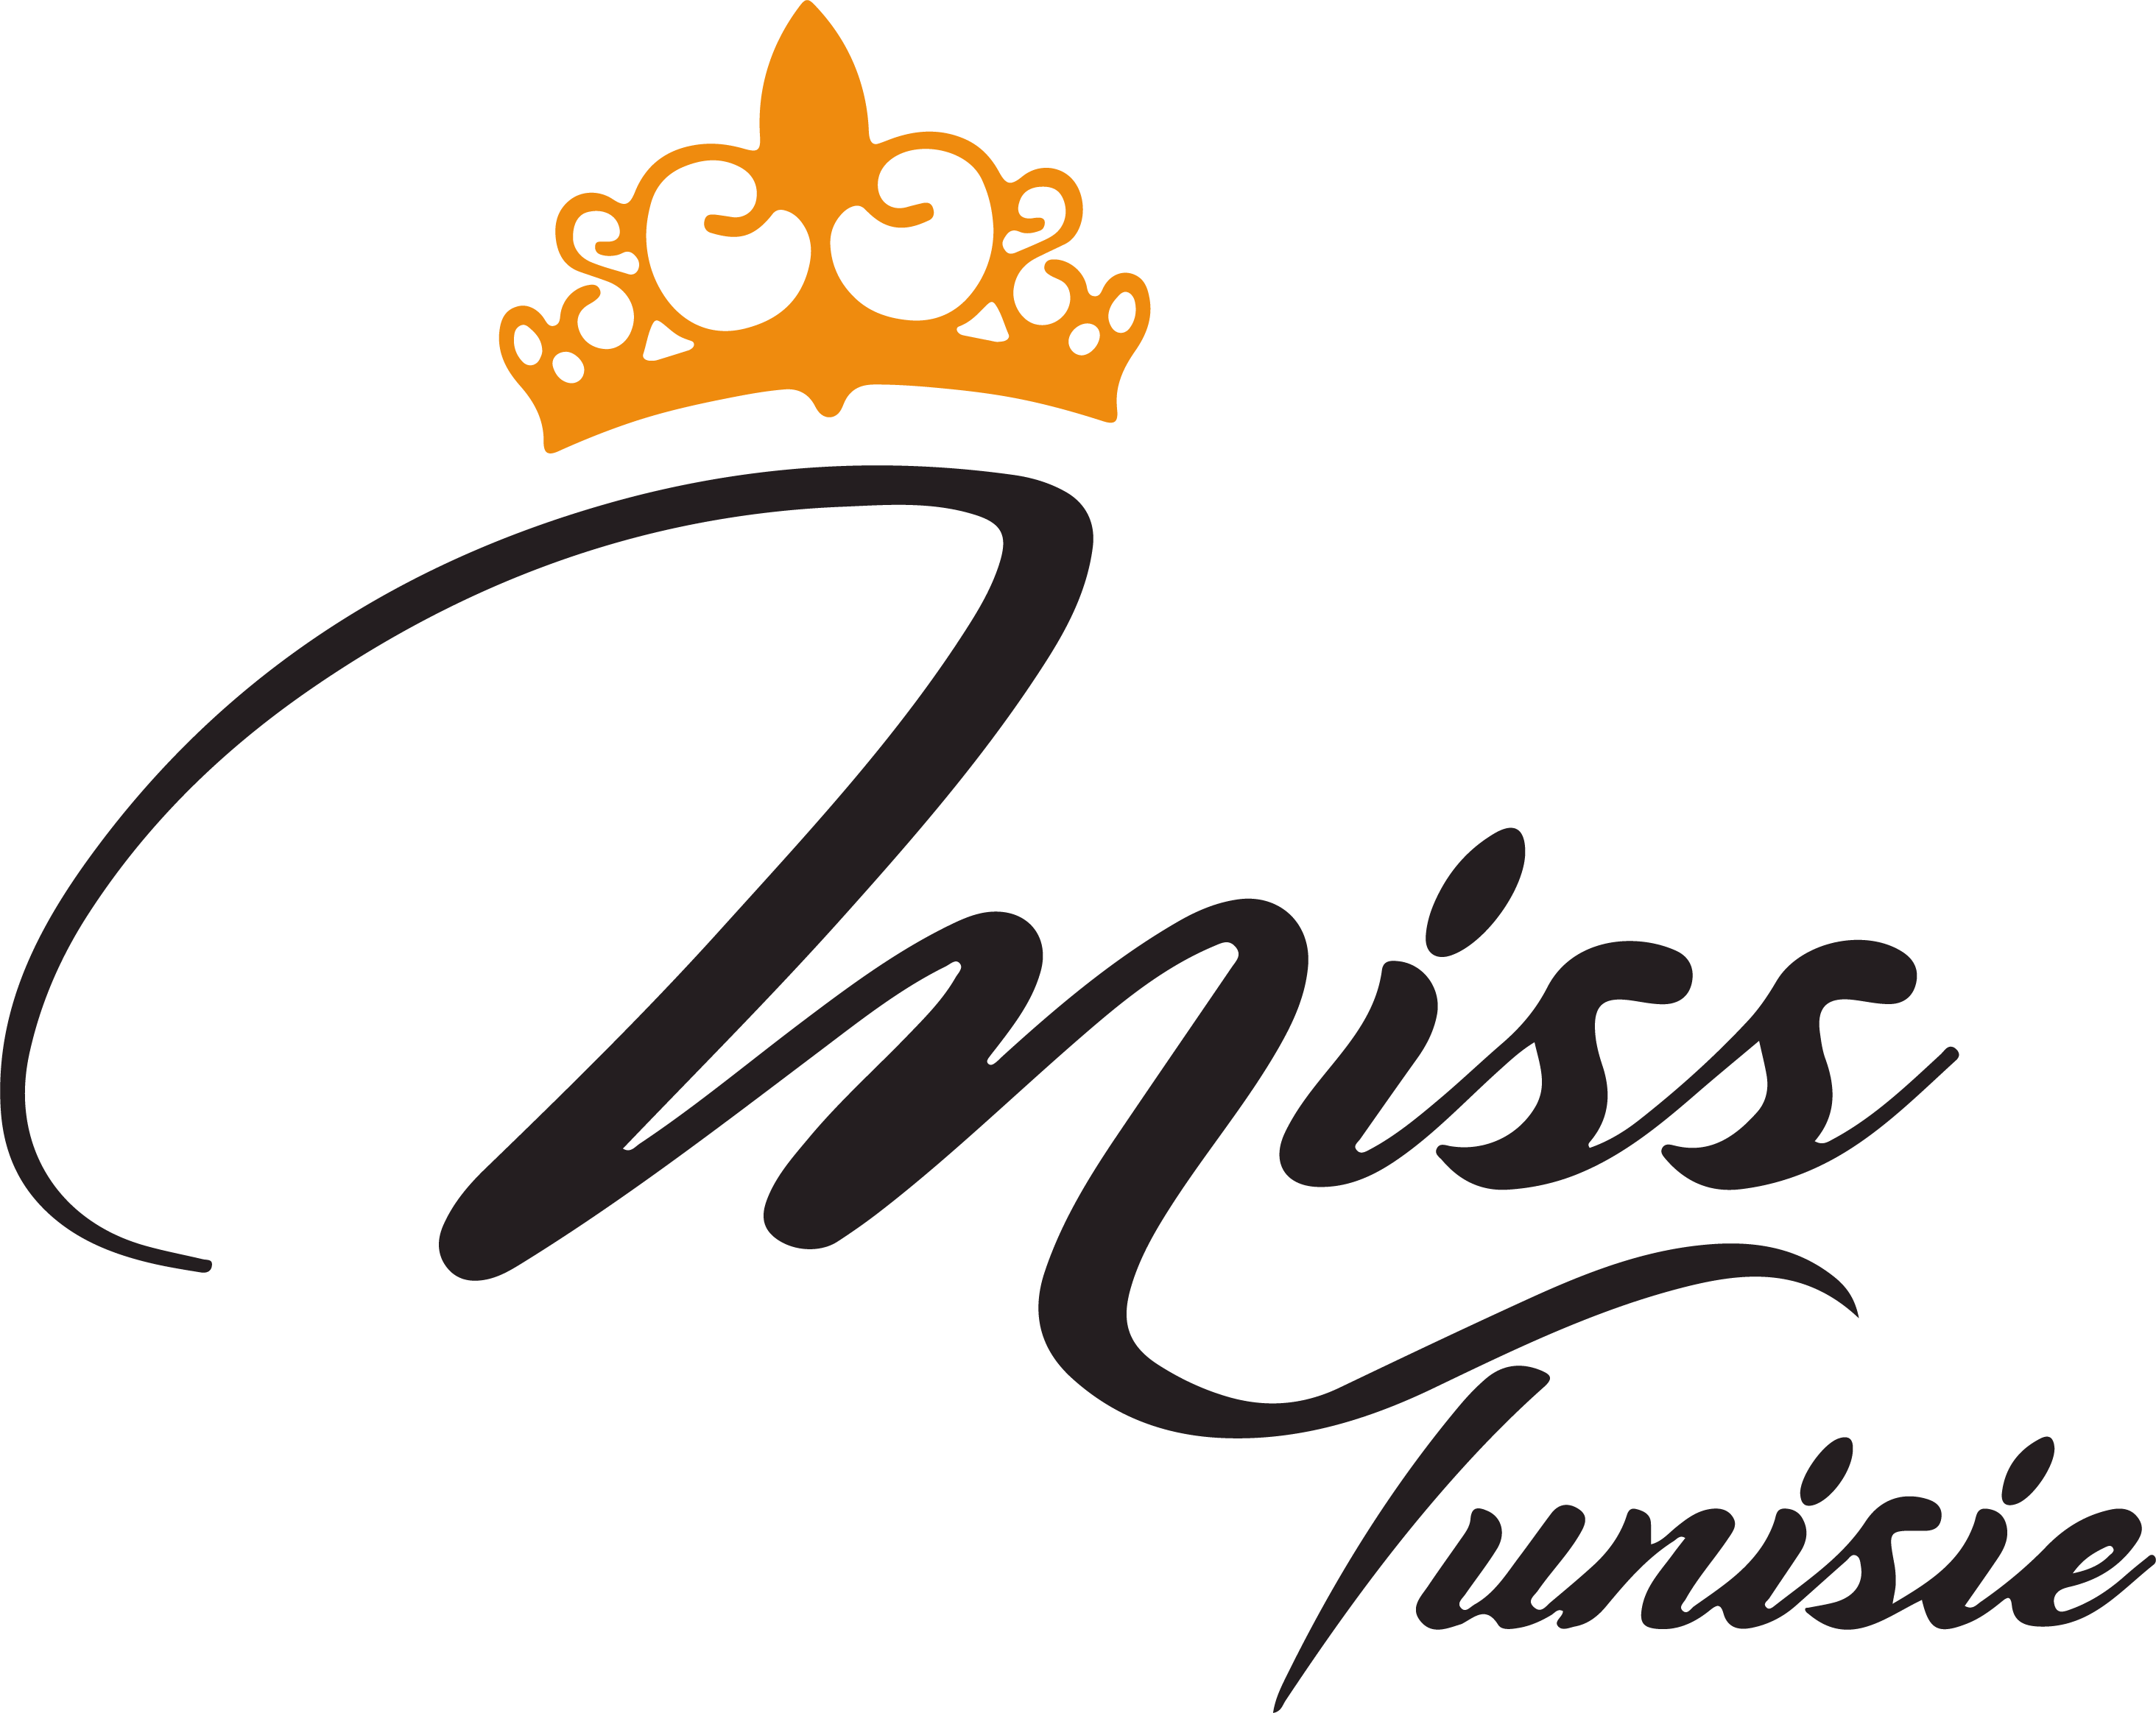 candidatas a miss tunisie 2021. final: 19 feb. 2022. - Página 2 1FOGkX